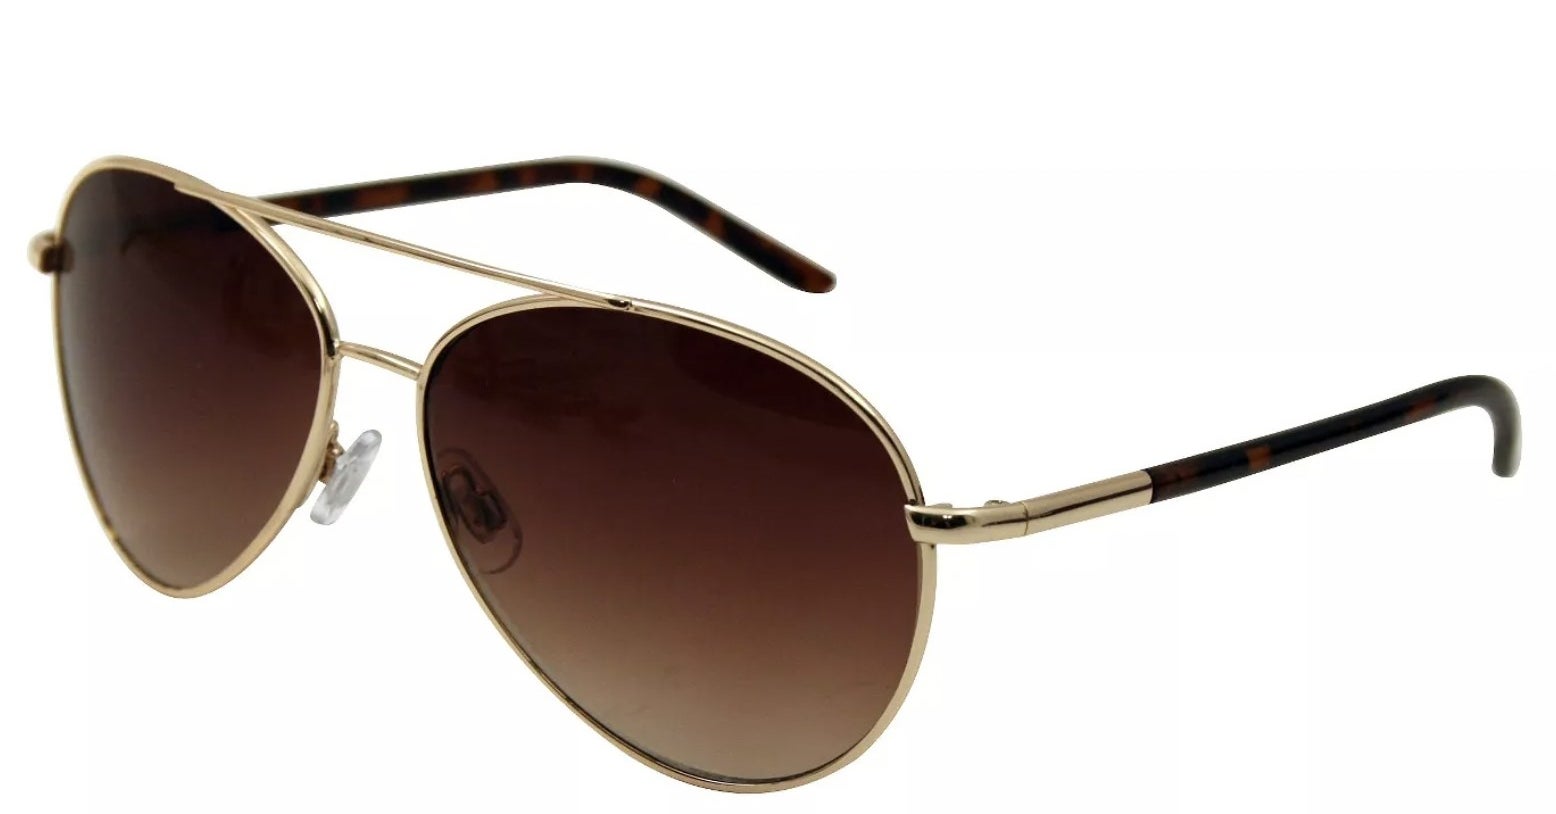 The metallic brown aviator sunglasses